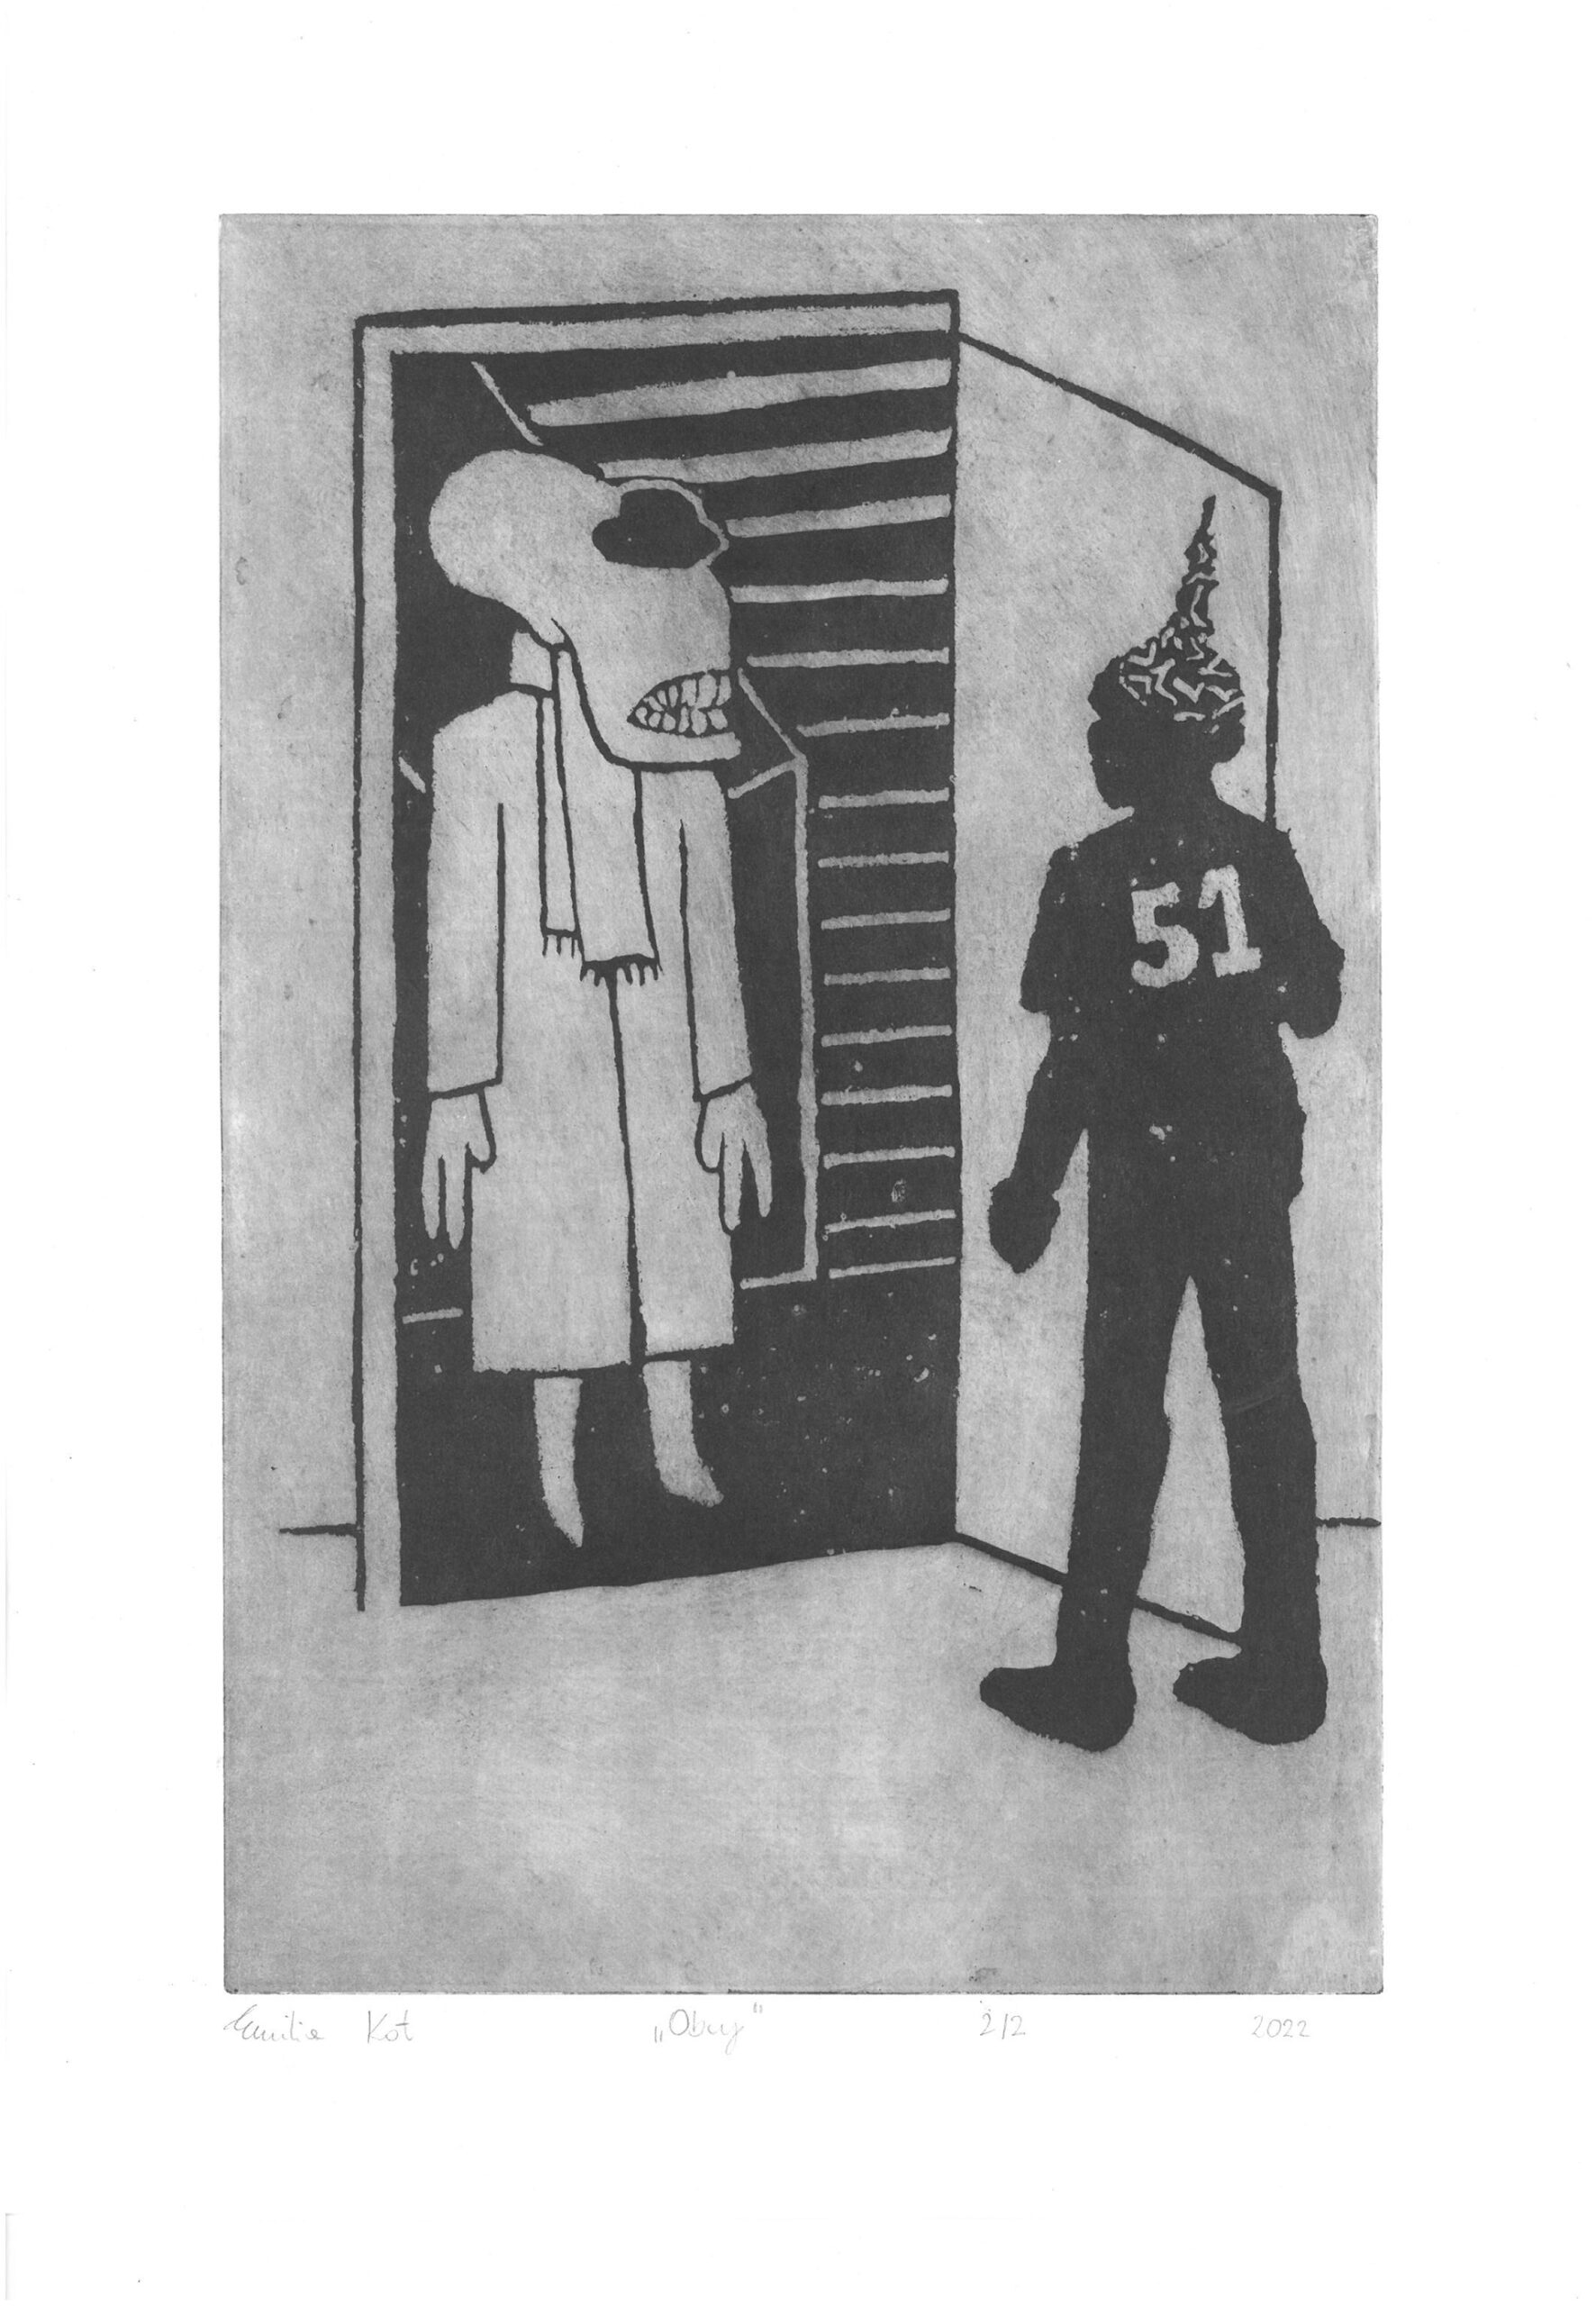 Grafika przedstawia postać stojącą w progu drzwi, zwróconą w kierunku drugiej postaci